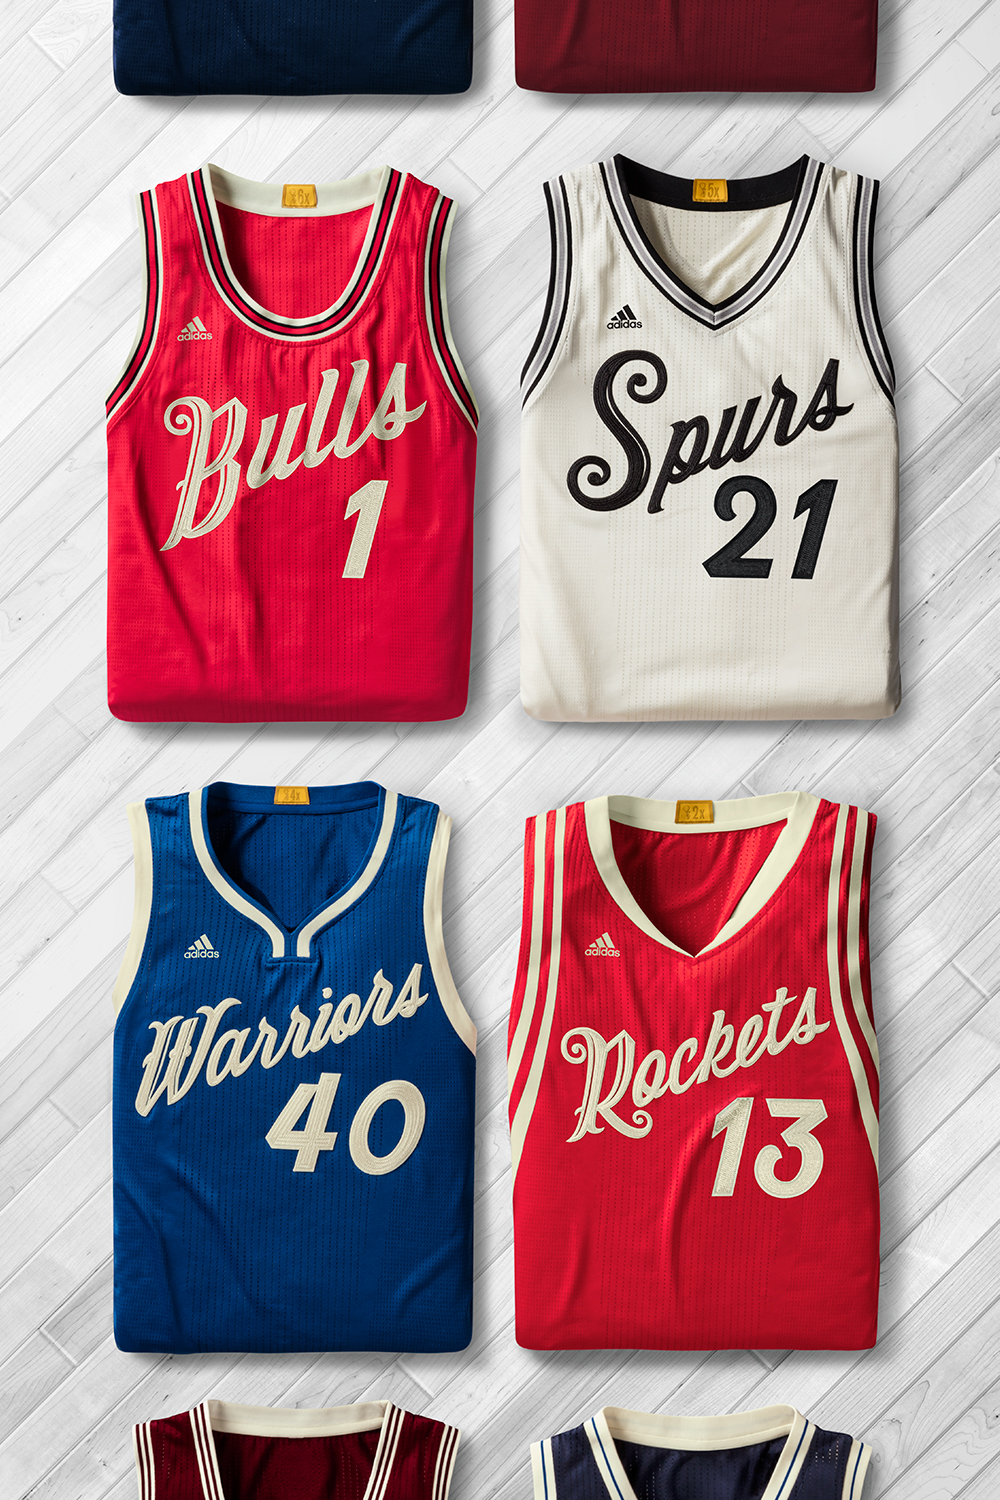 NBA Christmas Day uniforms 2013